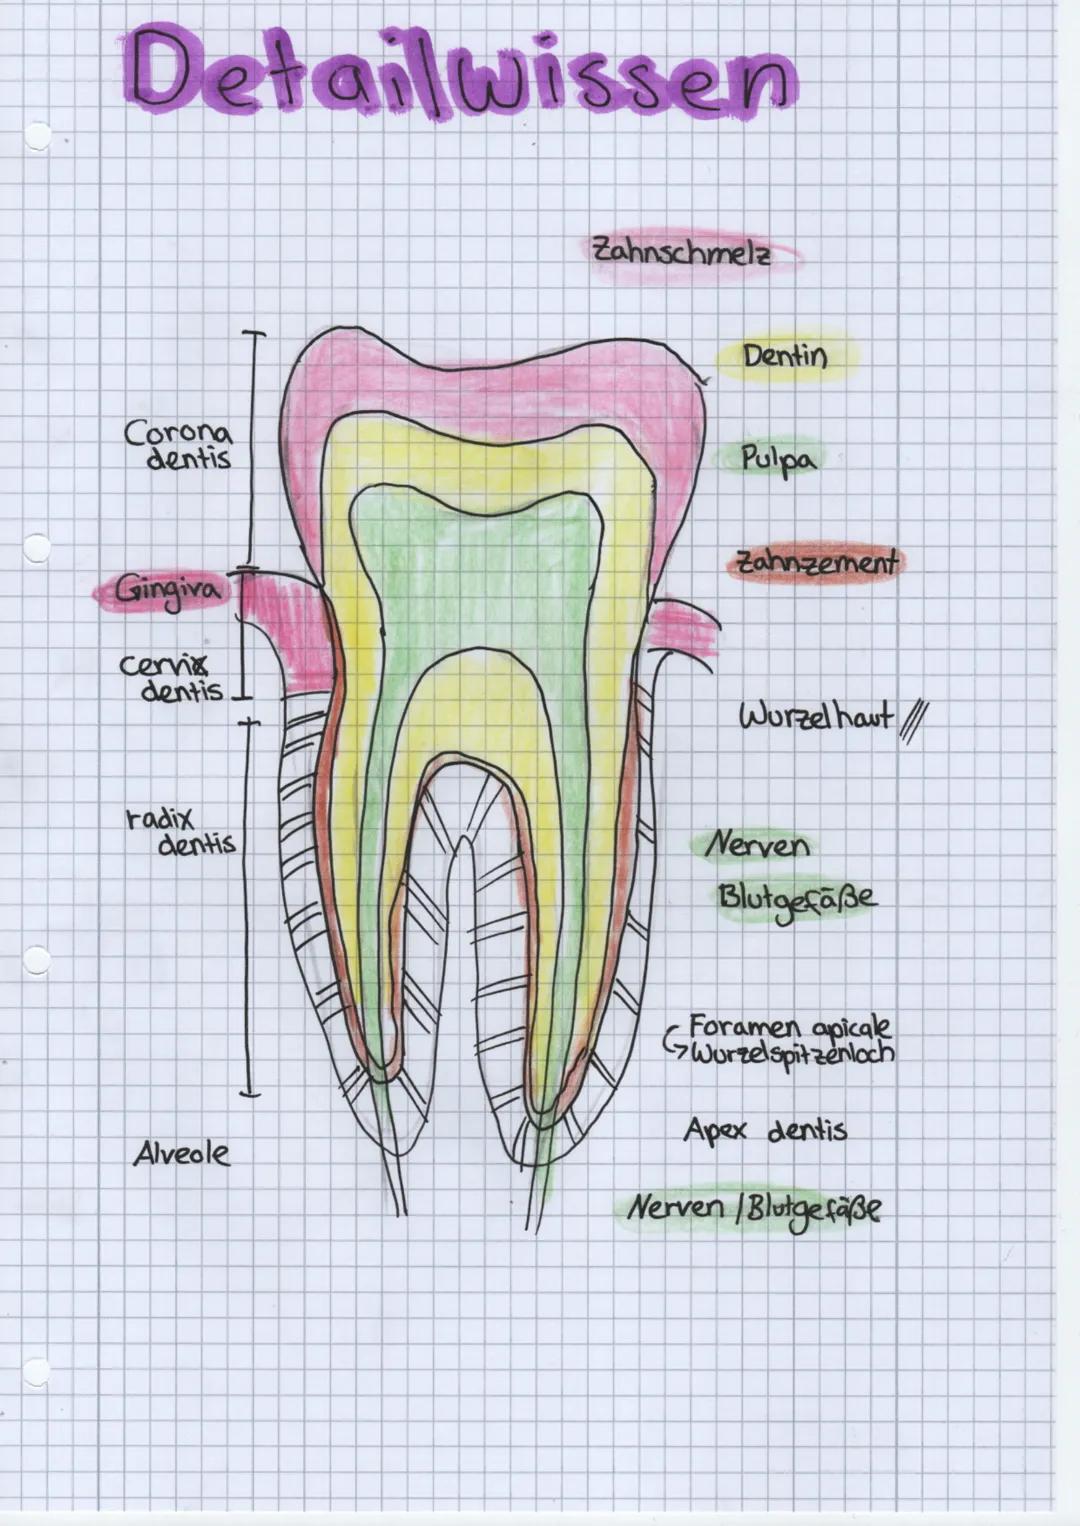 Folge mir auf:
• Instagram
● Knowunity
• TikTok
Alveole
Cervic
radix
Corona
dentis
dentis
Speicheldrüsen
3 große paarige Speicheldrüsen
zahl